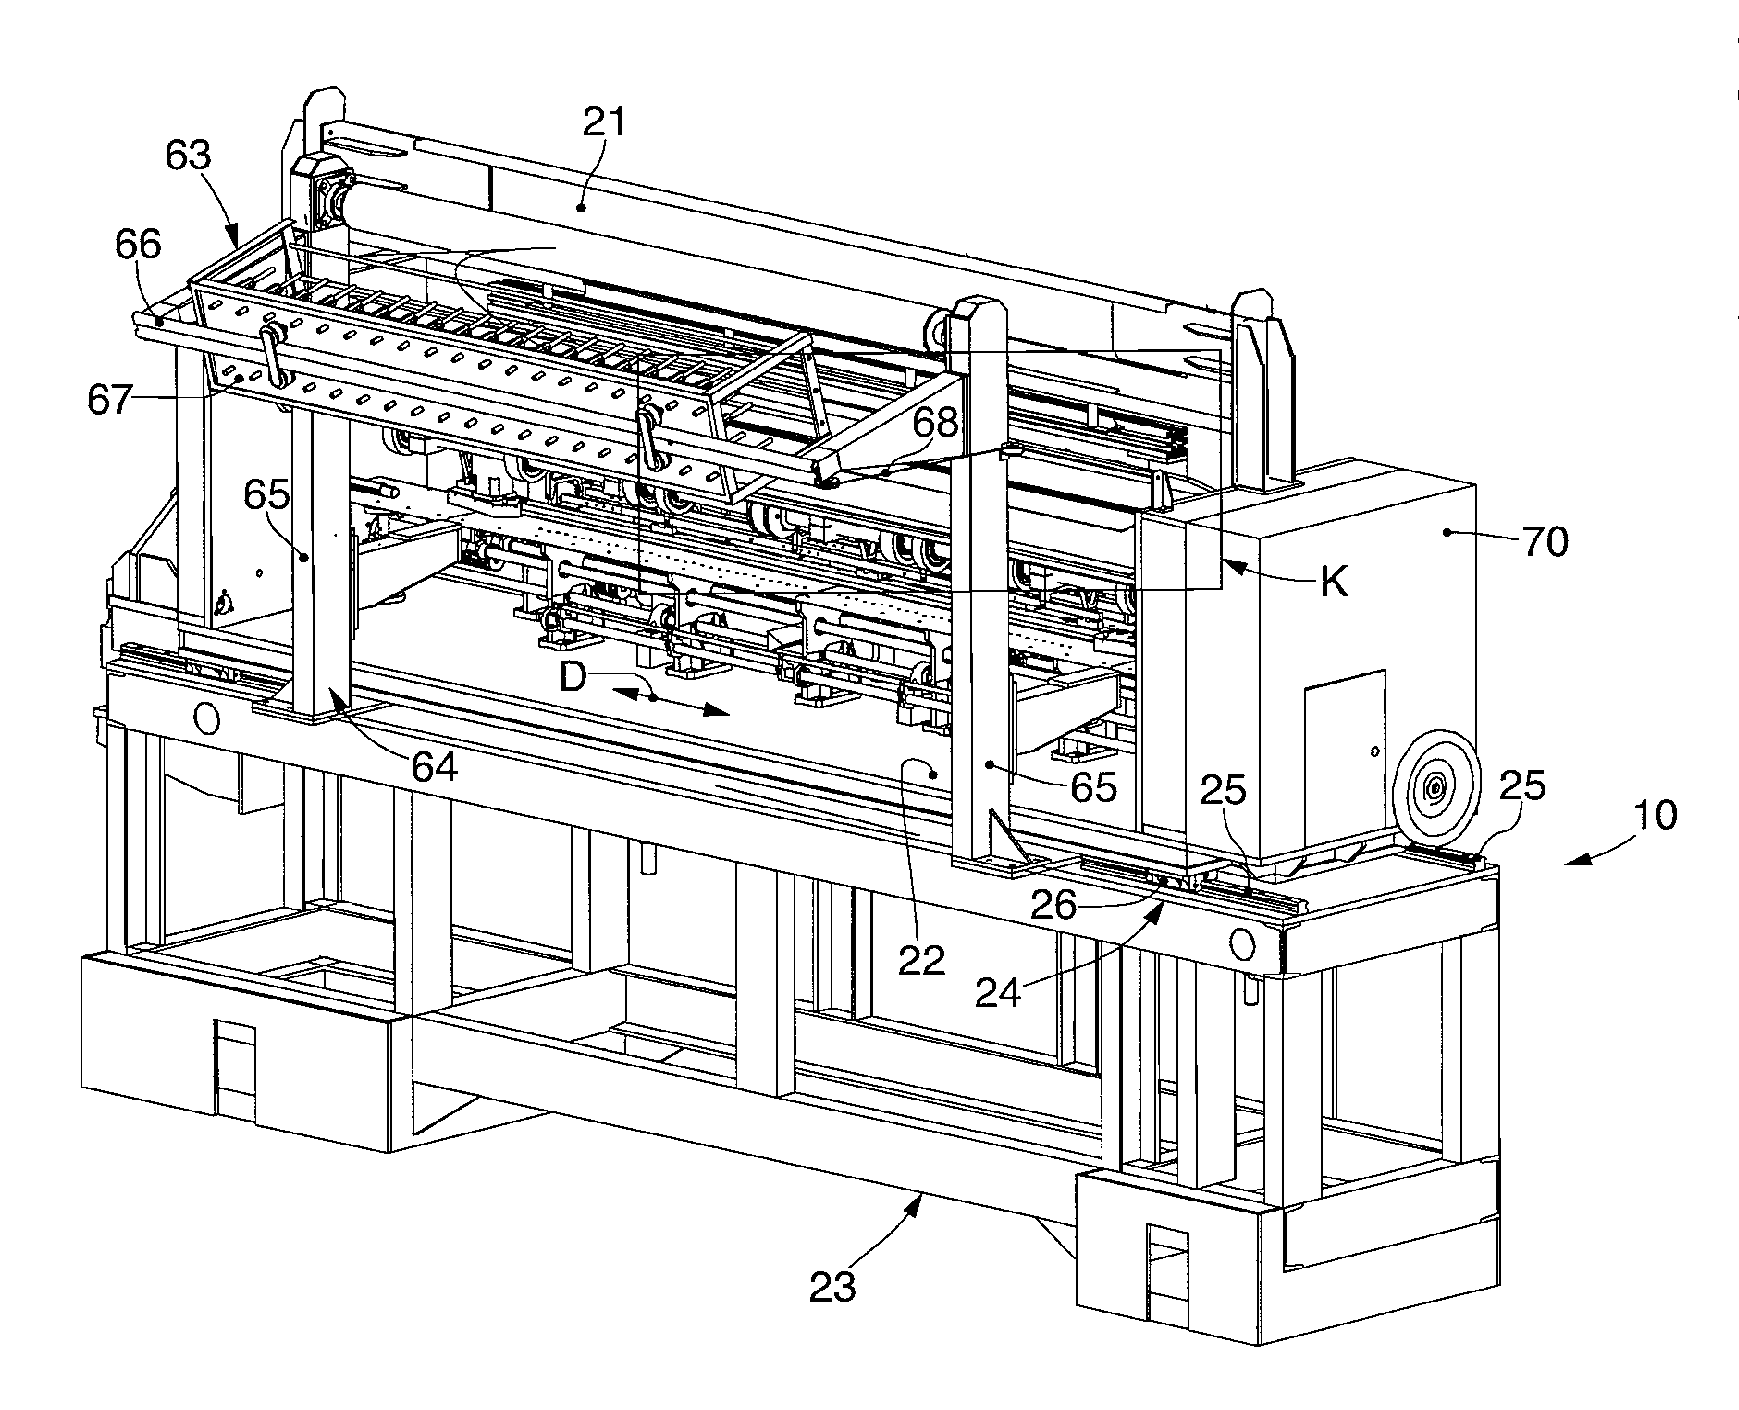 Multi-needle quilting machine and corresponding quilting method